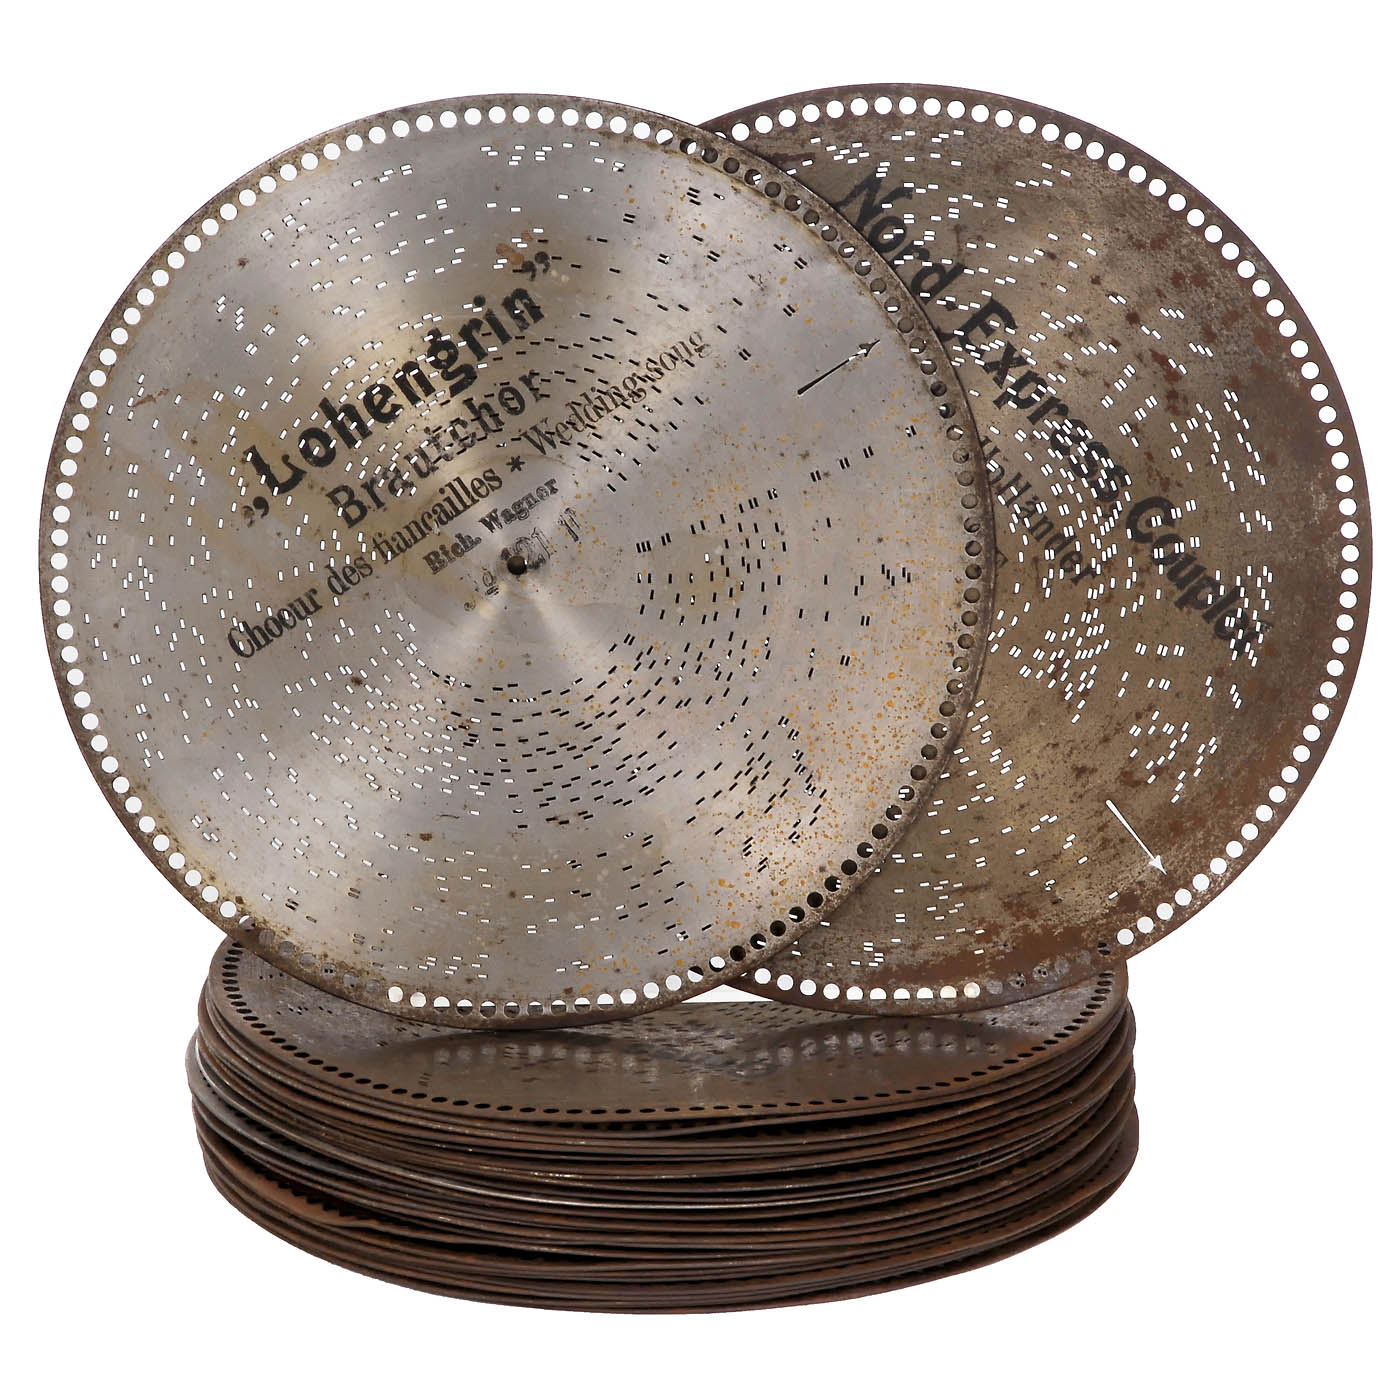 28 Lochmann 15 ¼ in. Discs, c. 1900 - Image 2 of 2